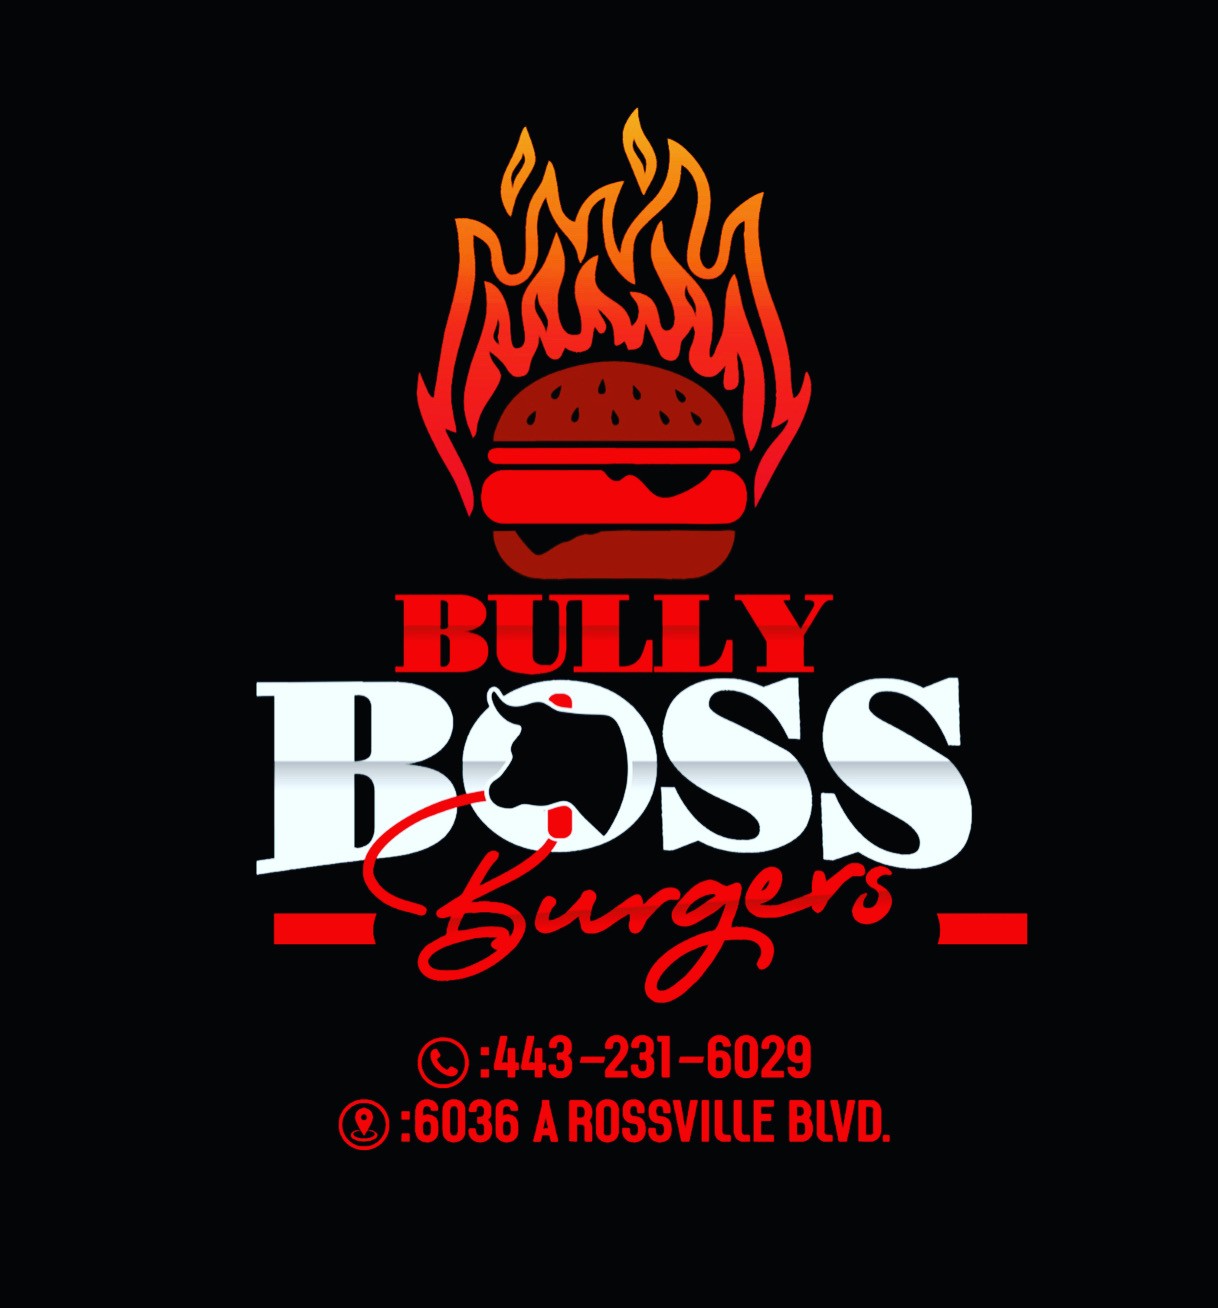 Bully Boss Burgers 1 Llc Food Truck X6036 A Rossville Blvd